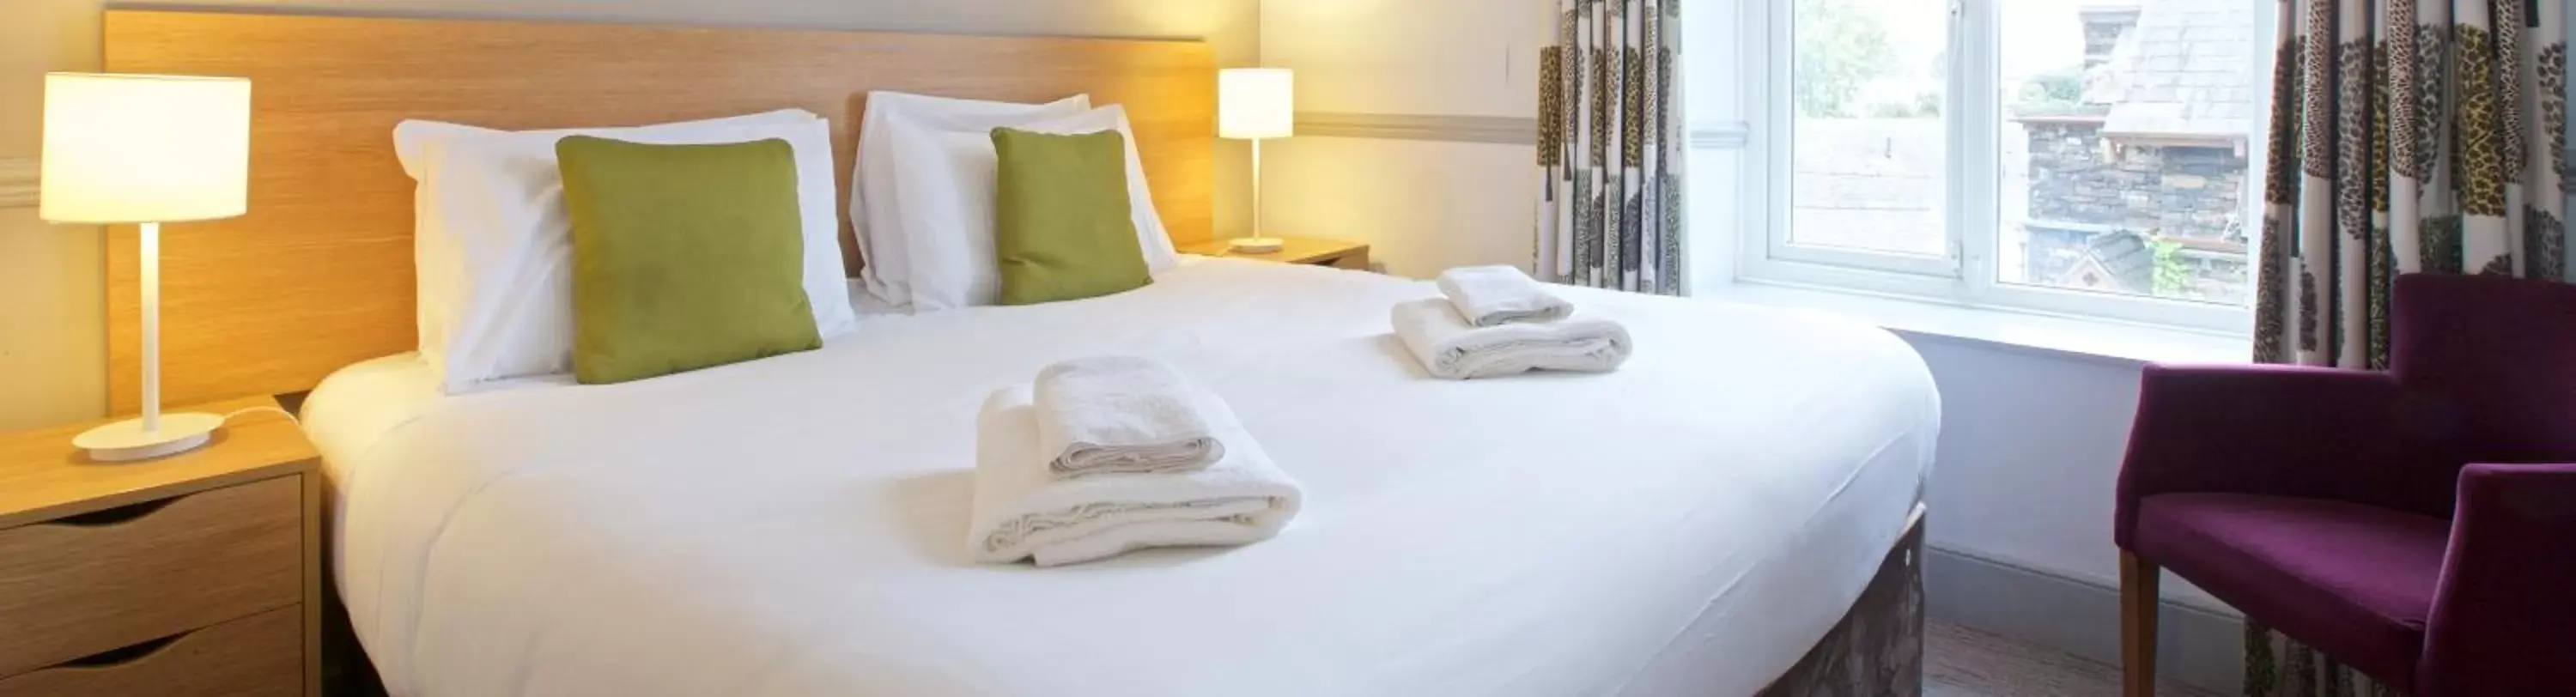 Bed in The Derwentwater Hotel